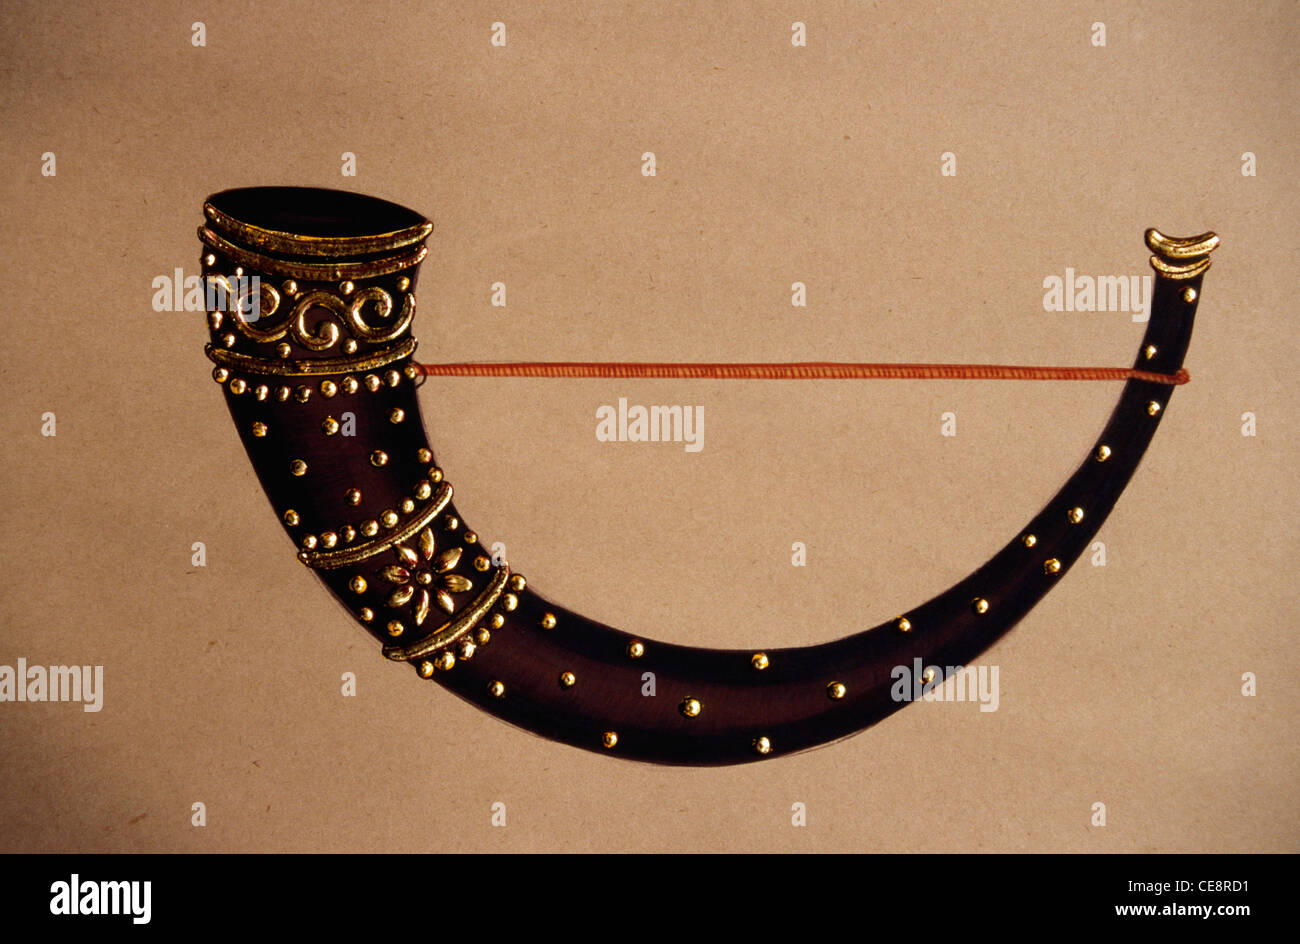 Trompette indienne , Turhi , peinture miniature de l'instrument de musique  classique indien à vent , rajasthan , inde , asie Photo Stock - Alamy